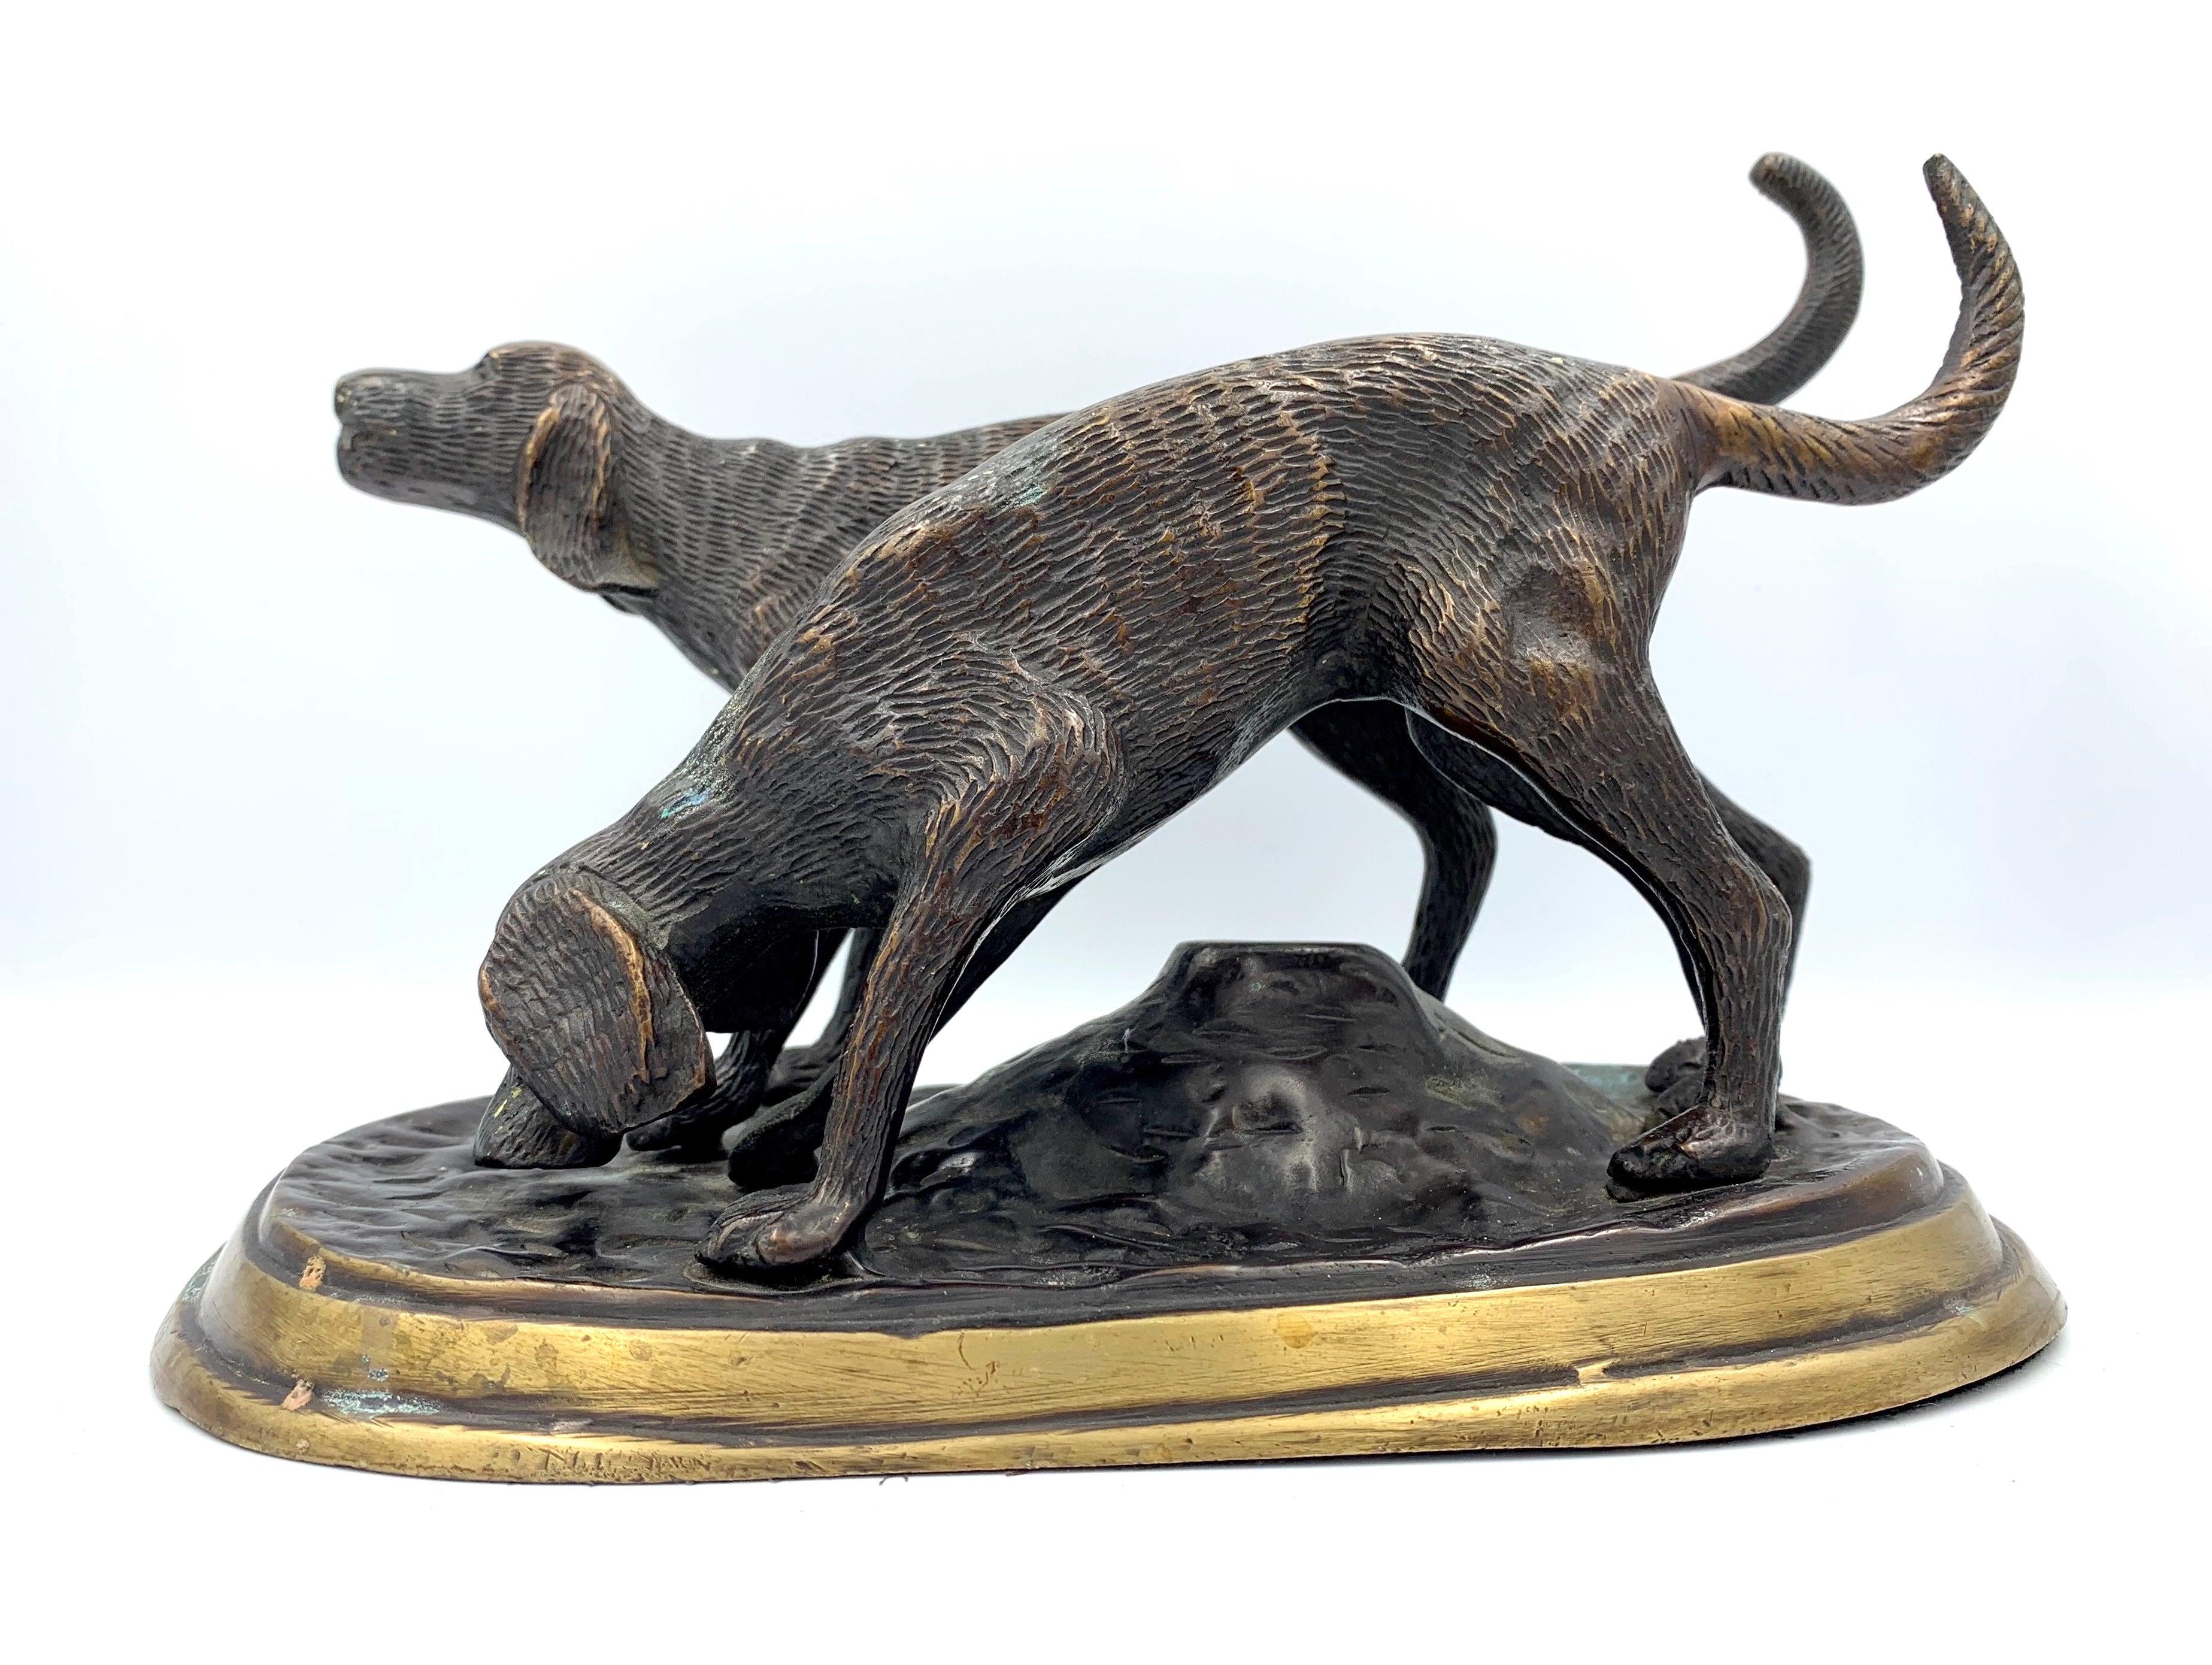 Nous vous présentons une sculpture en bronze de deux chiens de chasse. L'un des chiens est représenté avec le nez au sol, ayant pris le parfum de la chasse. L'autre chien pointe à l'avant, son corps étant positionné pour commencer la course. La